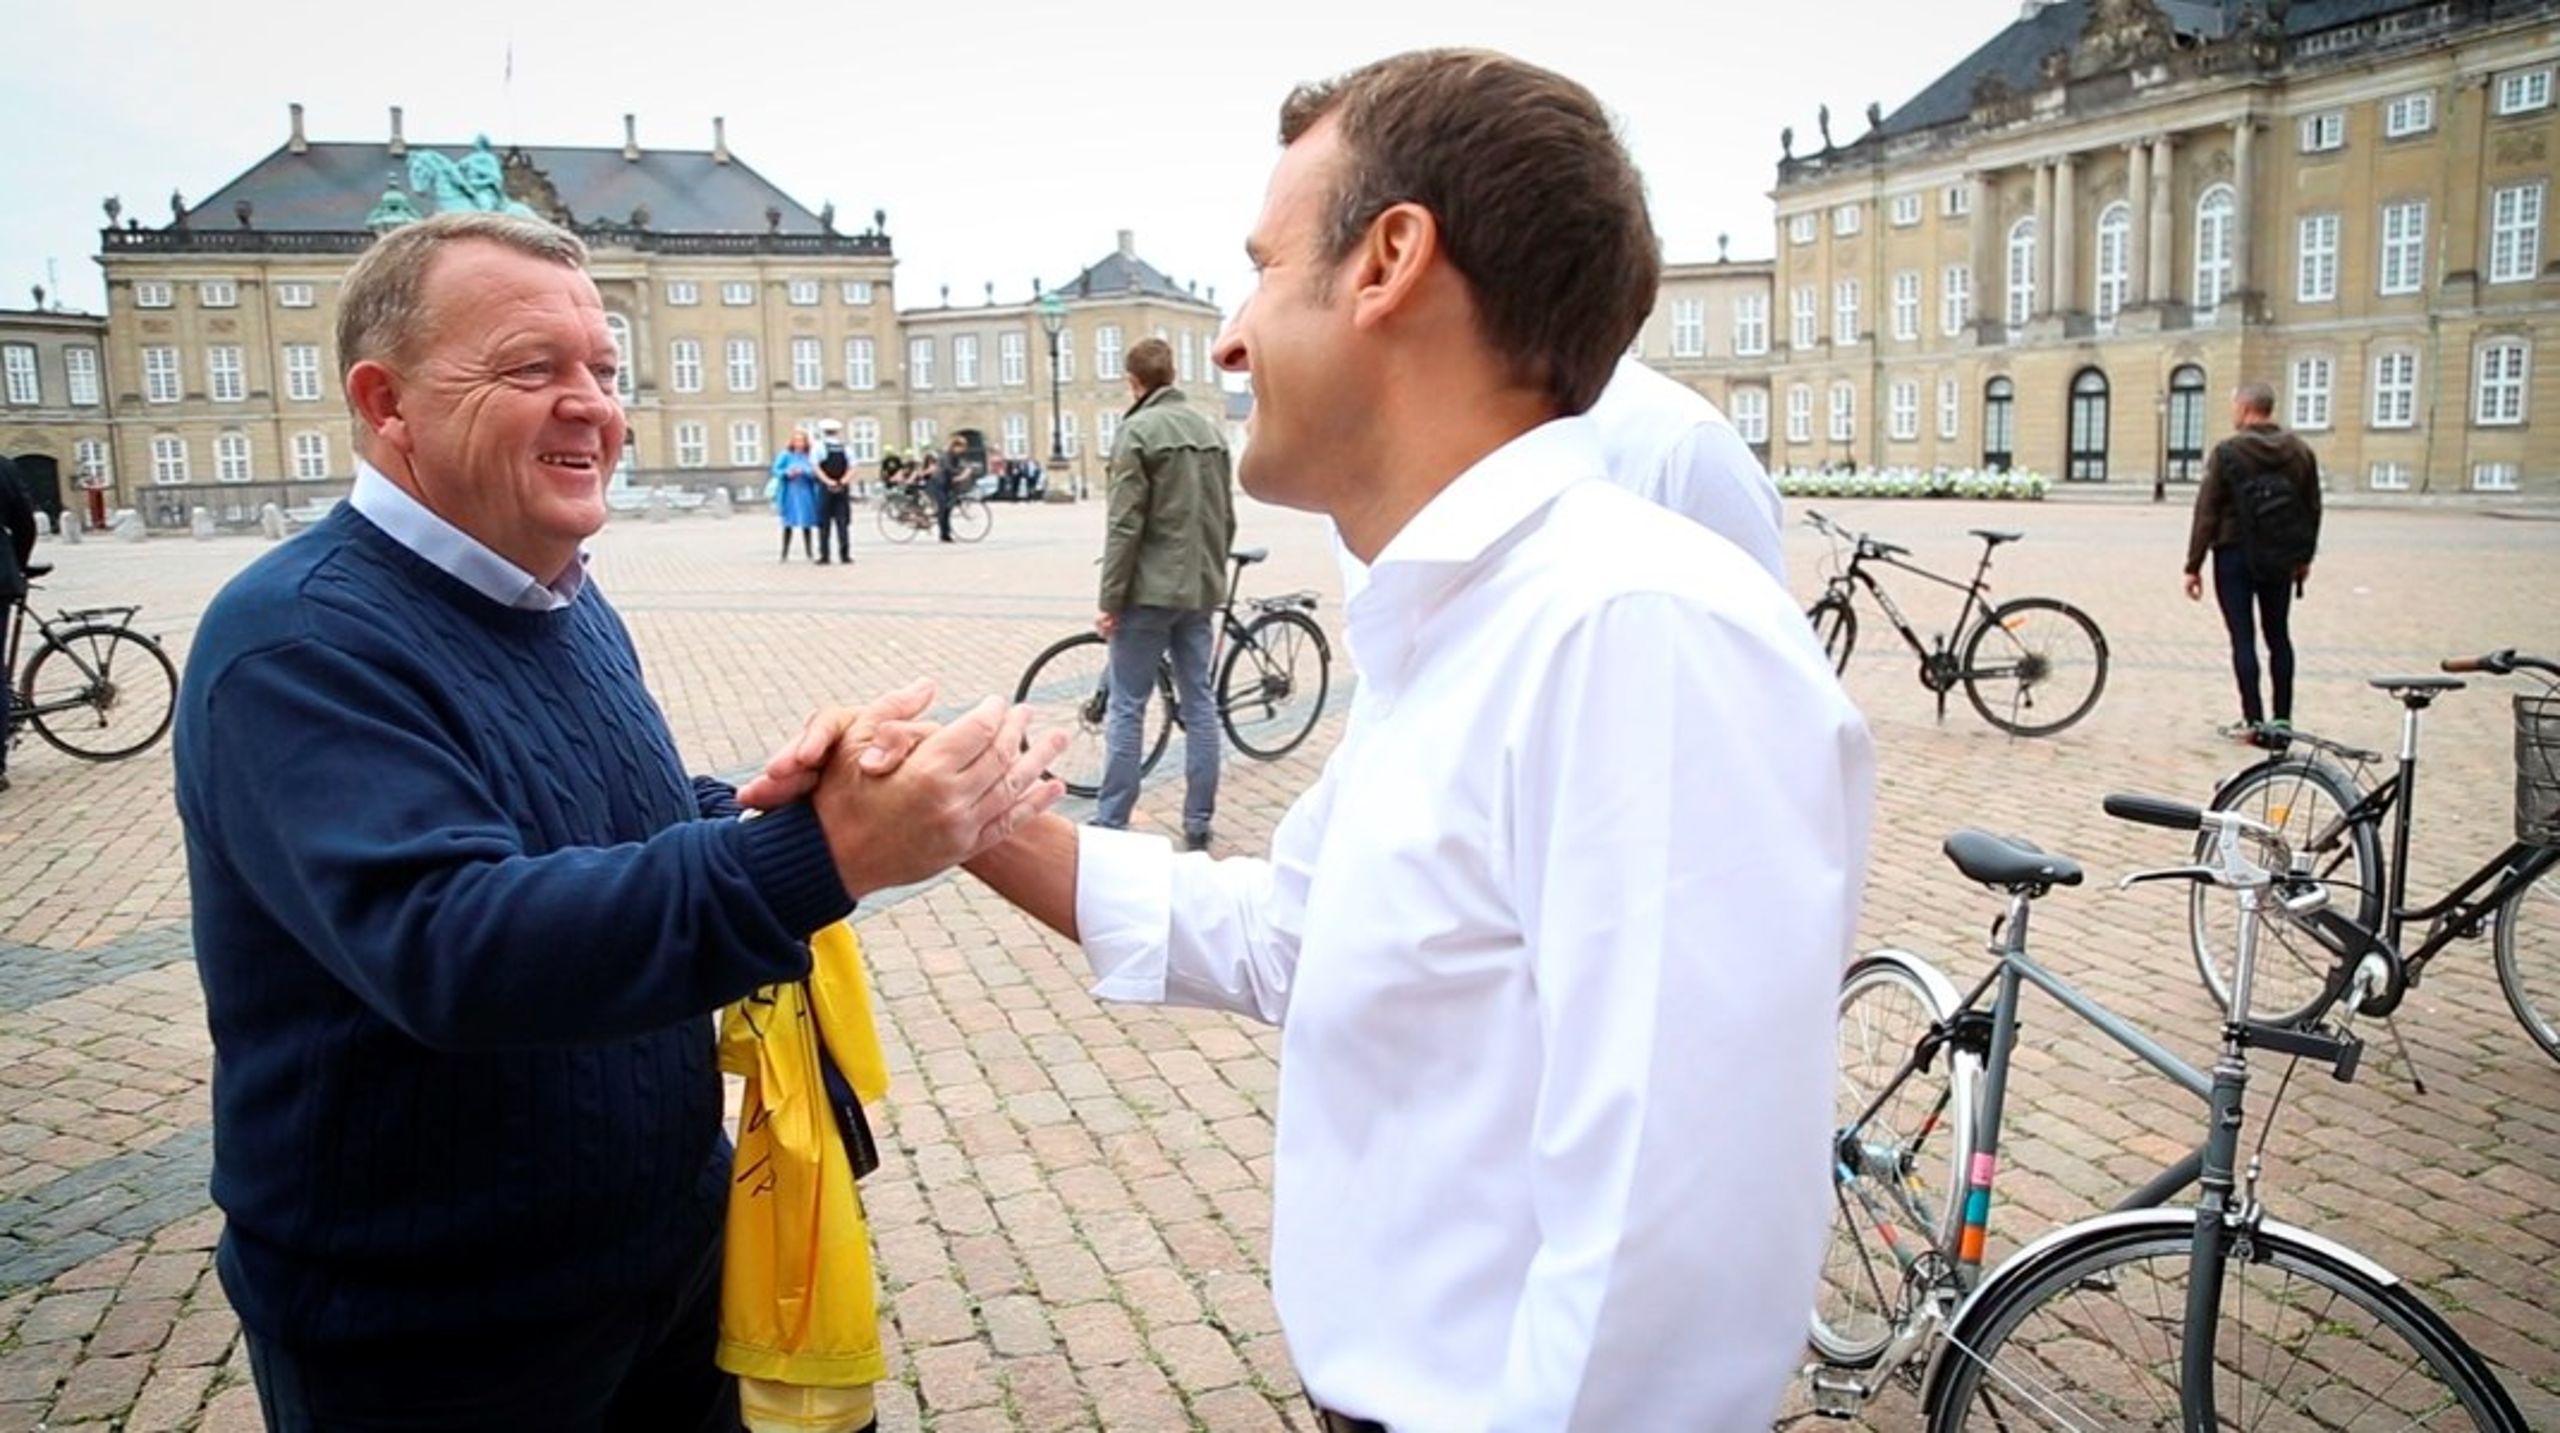 Macron gav daværende statsminister Lars Løkke Rasmussen en gul førertrøje i forbindelse med et statsbesøg i København i 2018.